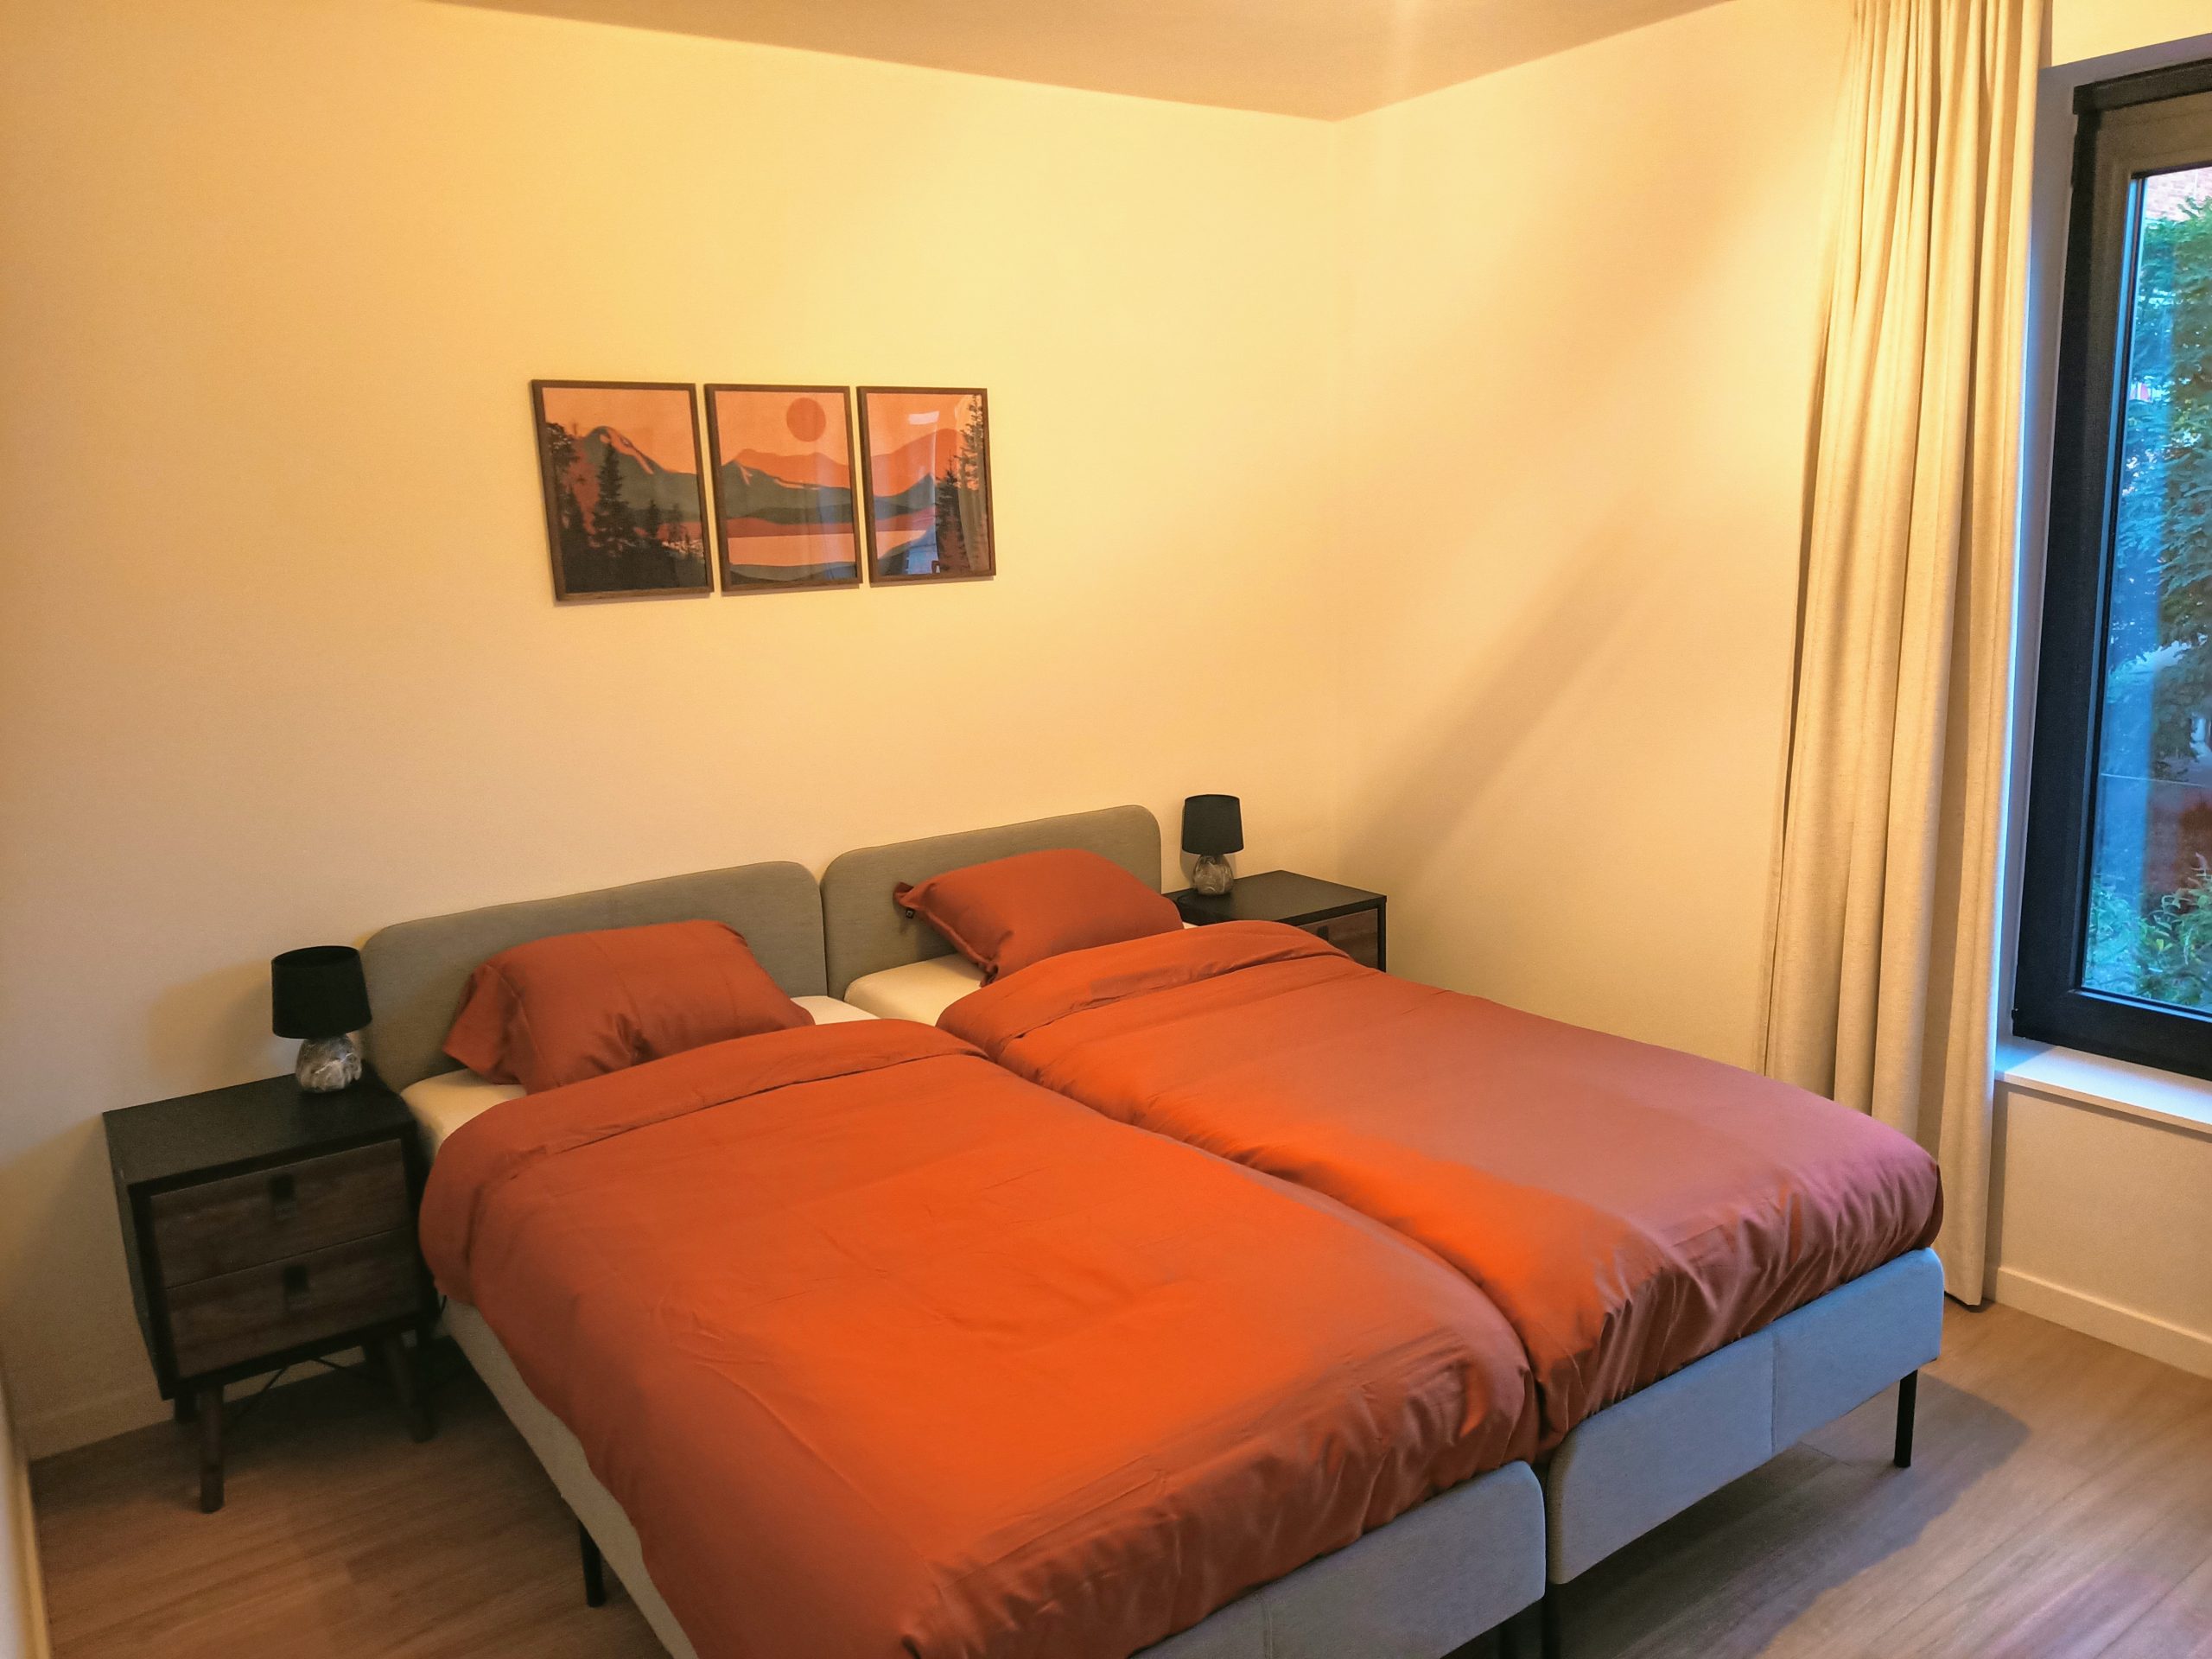 Salvatore - 2 Bedrooms apartment for rent in Ghent bedroom 1